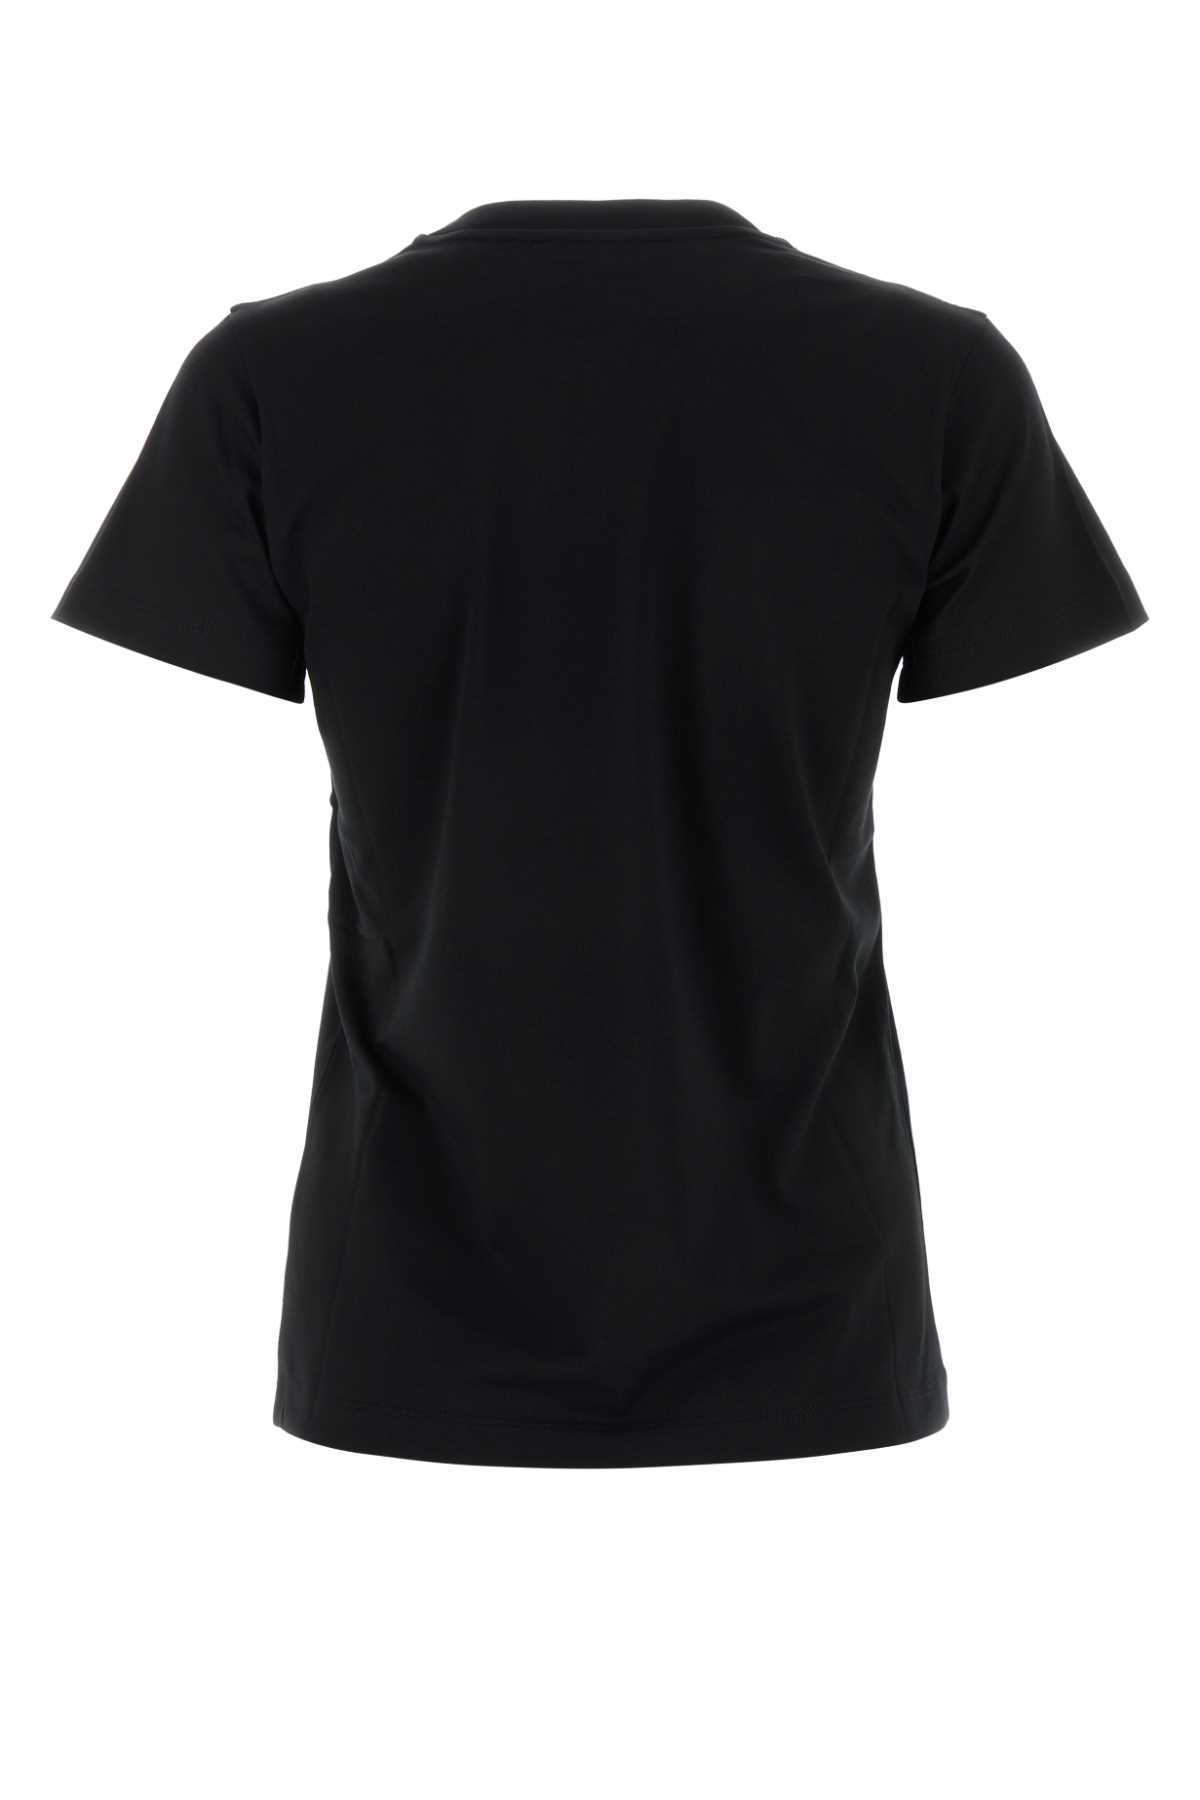 Alexander Mcqueen Black Cotton T-shirt